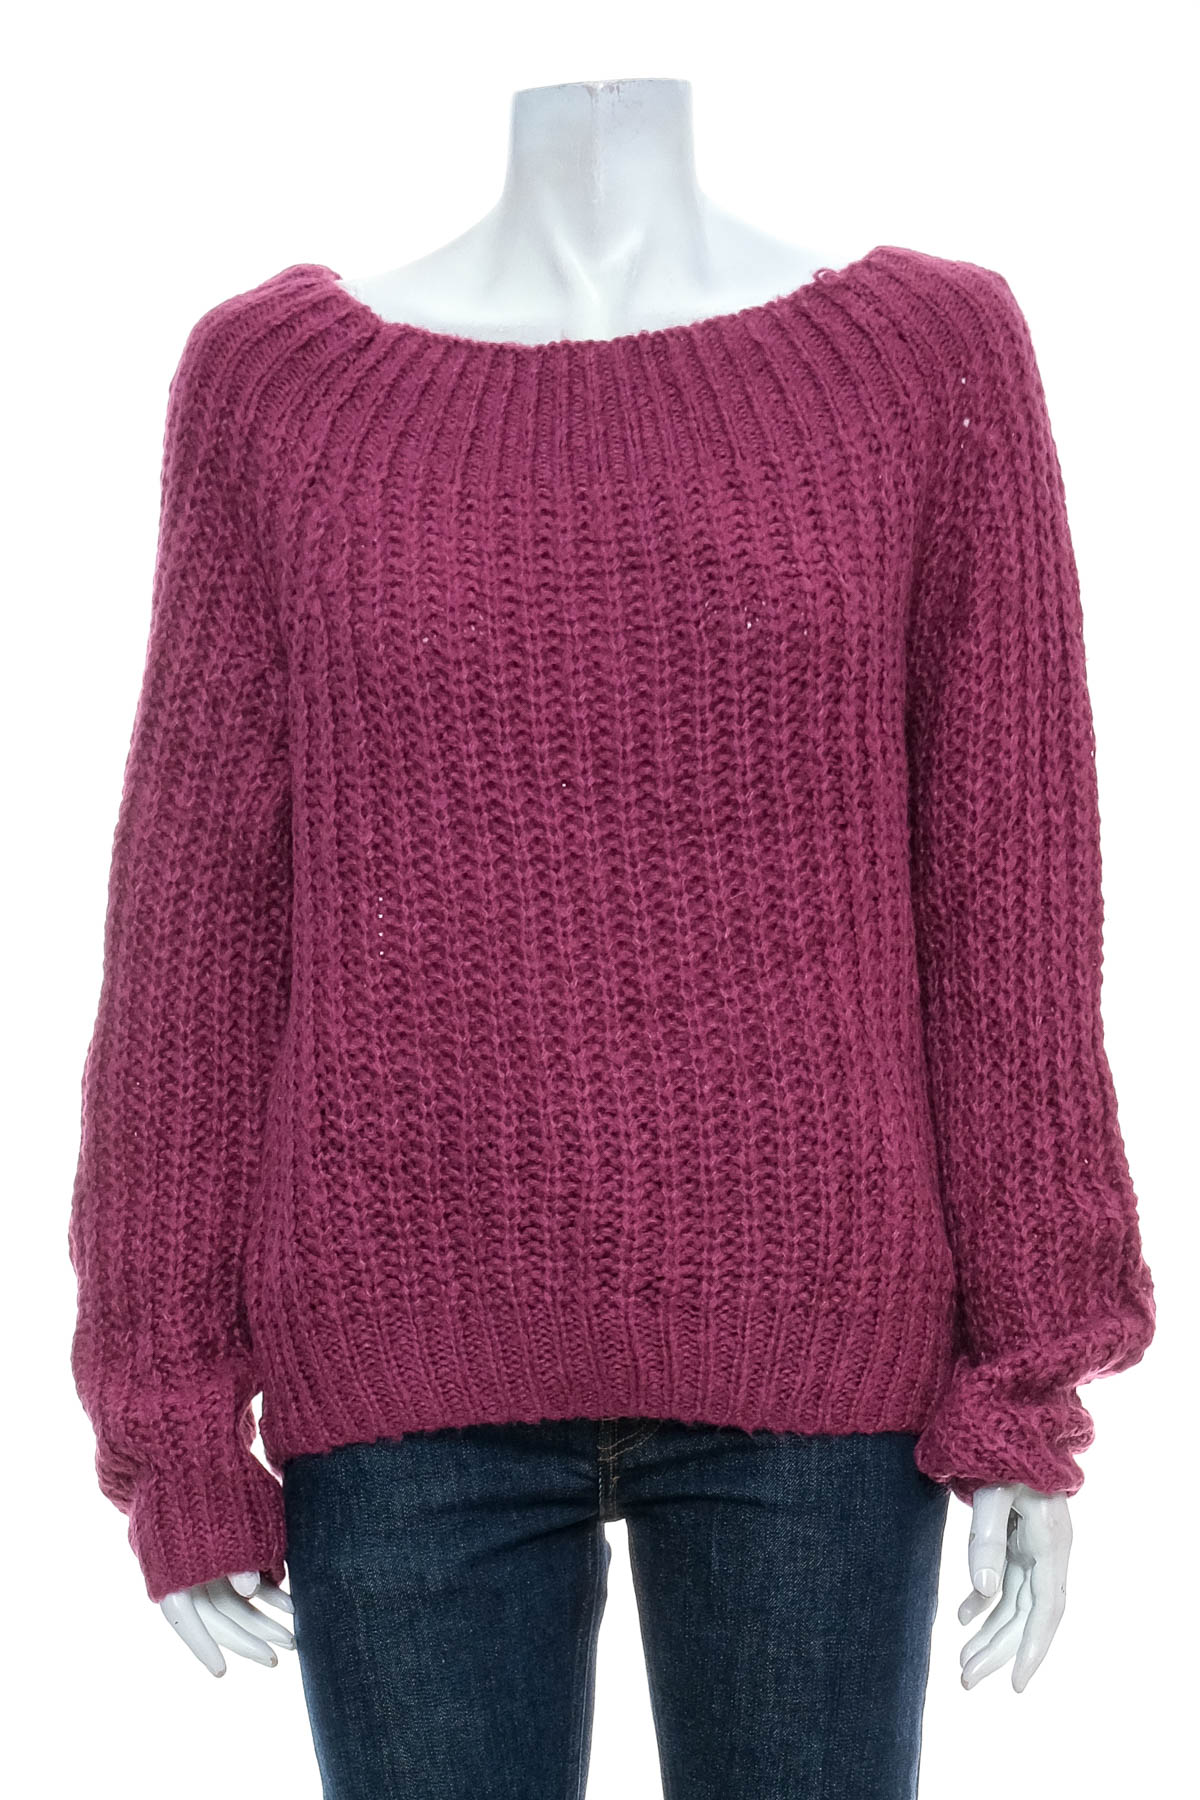 Women's sweater - Rue 21 - 0